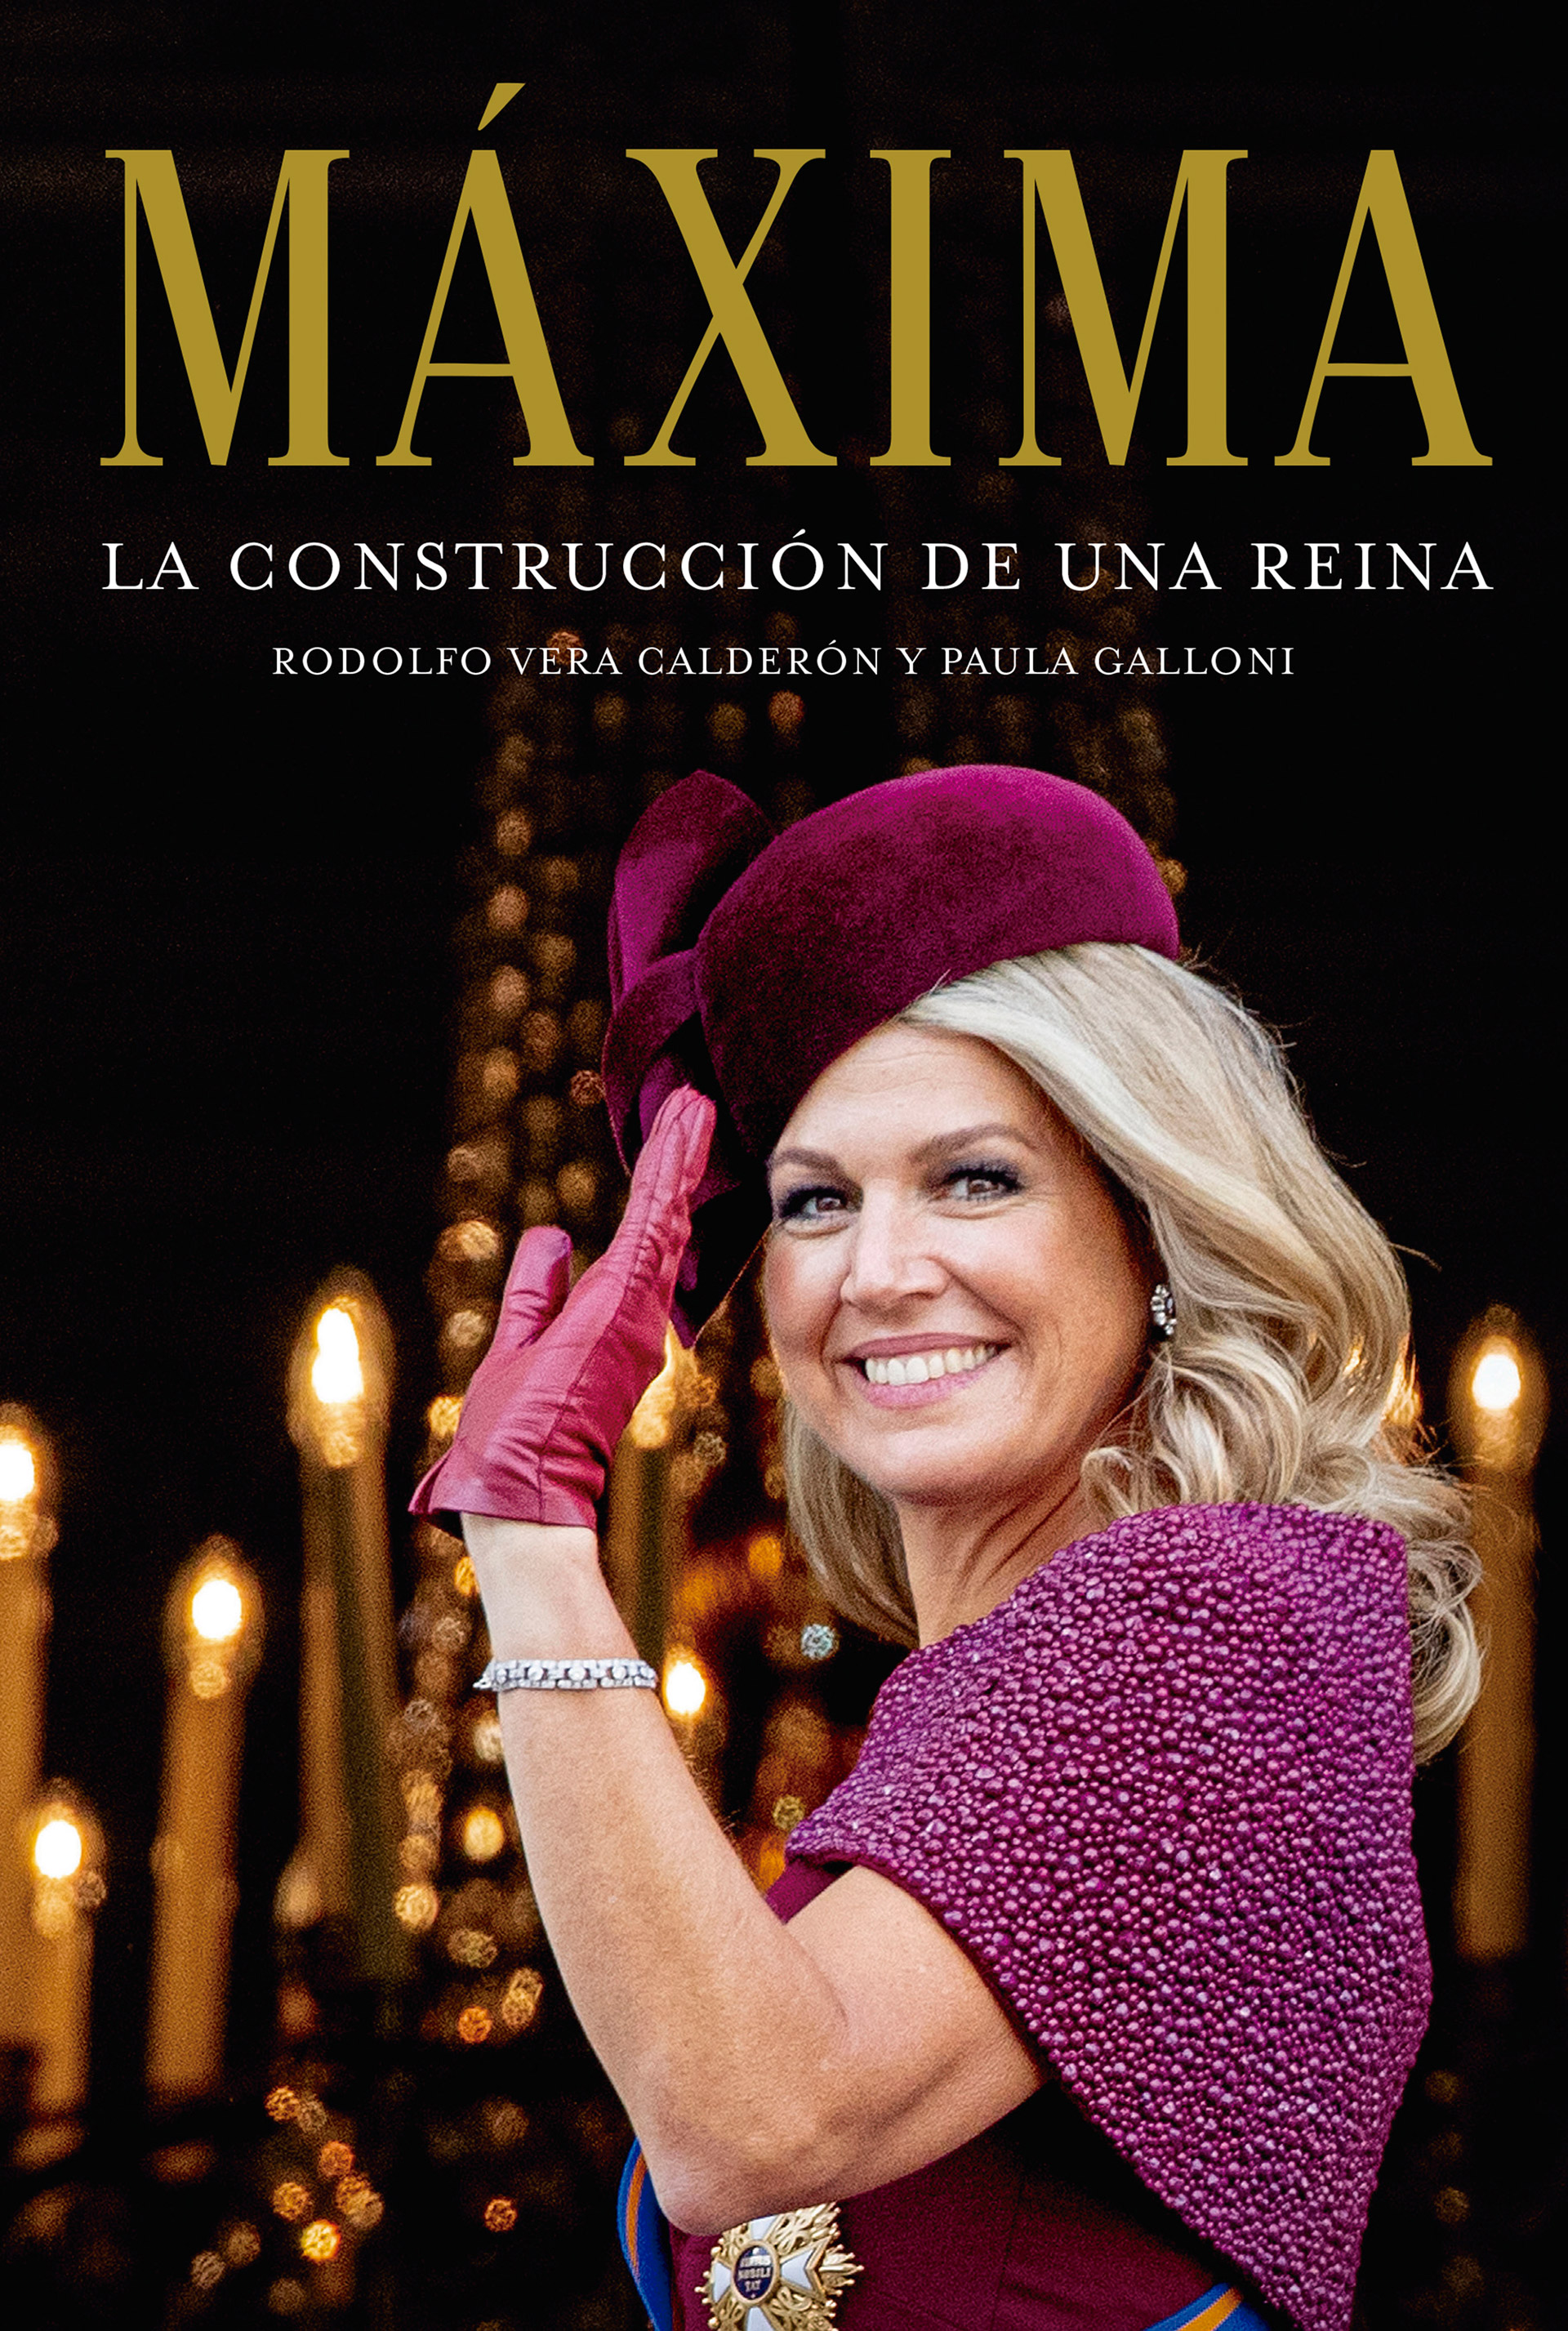 El libro “Máxima, la construcción de una reina” (Penguin Random House) de los periodistas Rodolfo Vera Calderón y Paula Galloni